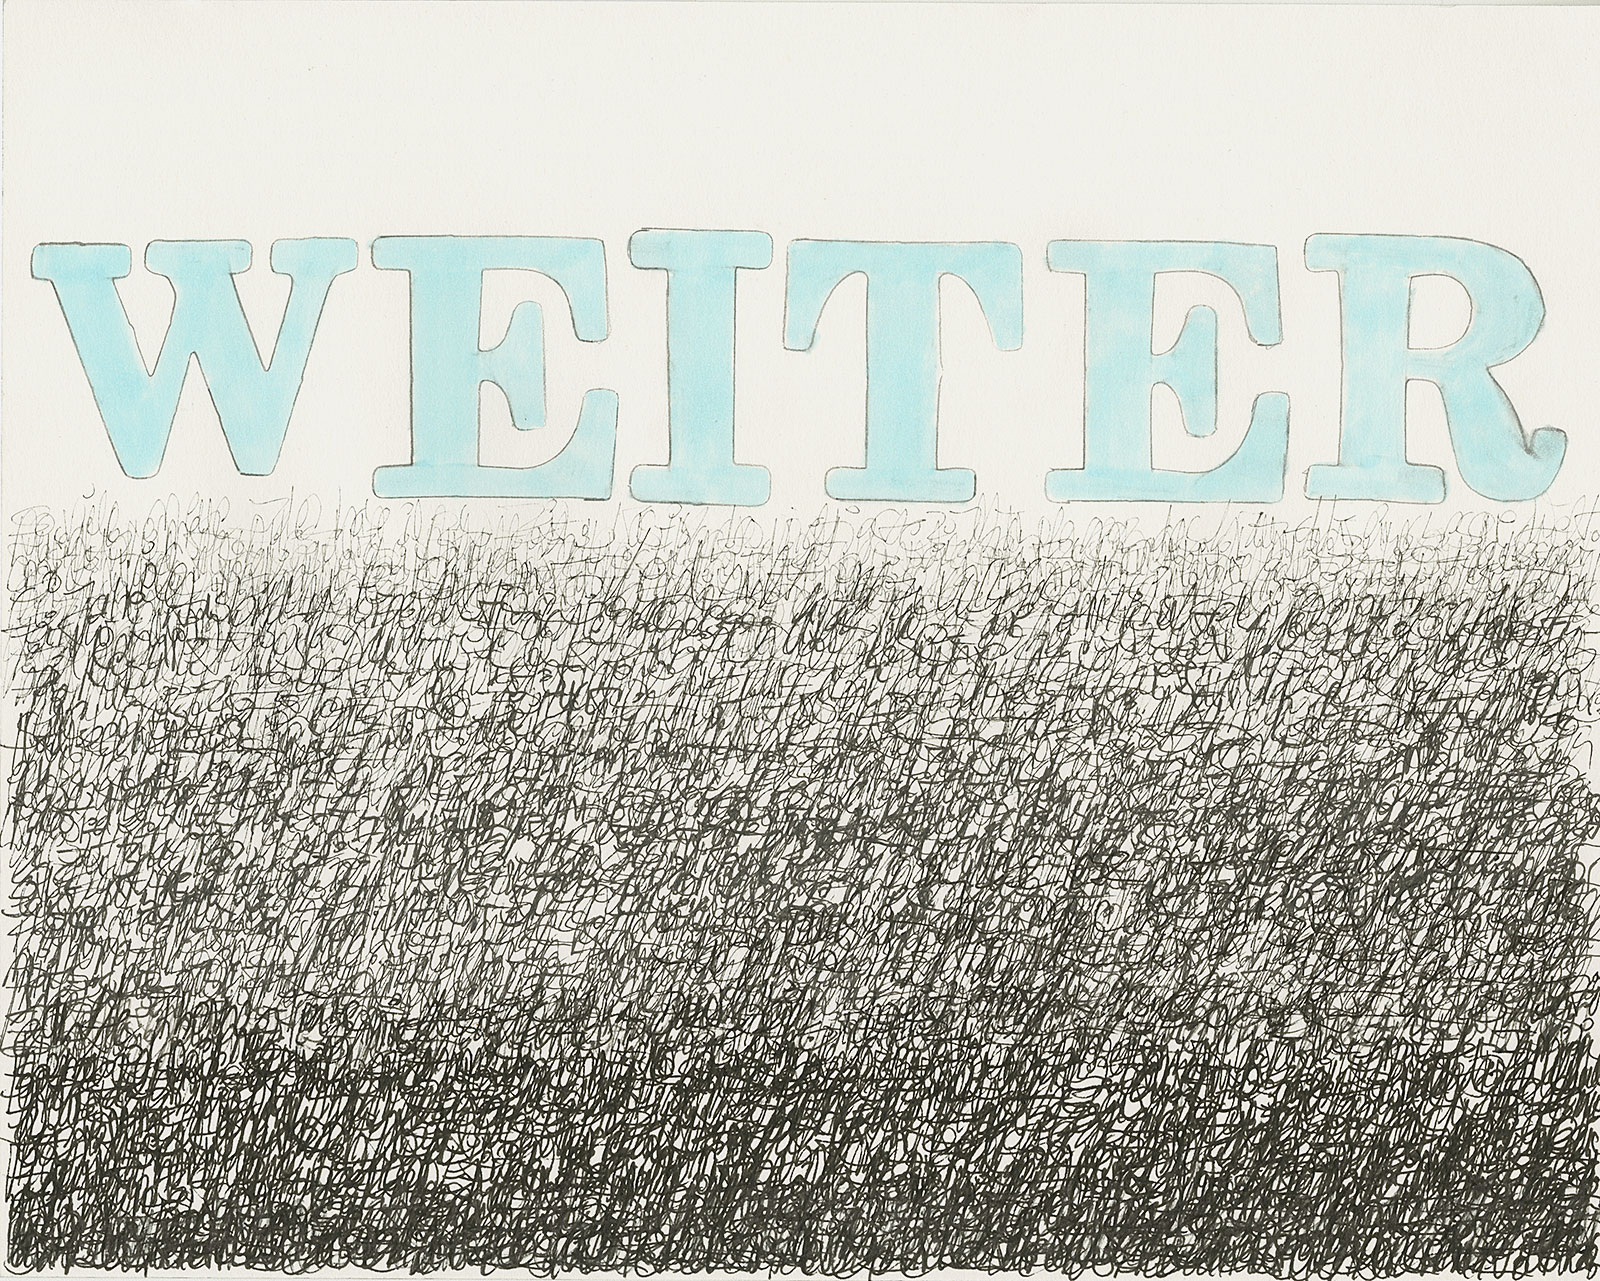 Die zeitgenössische Papierarbeit weiter von Doris Junker ist eine experimentelle Auseinandersetzung mit Schrift - Buchstaben und Handschrift in Kombination mit Farbe.